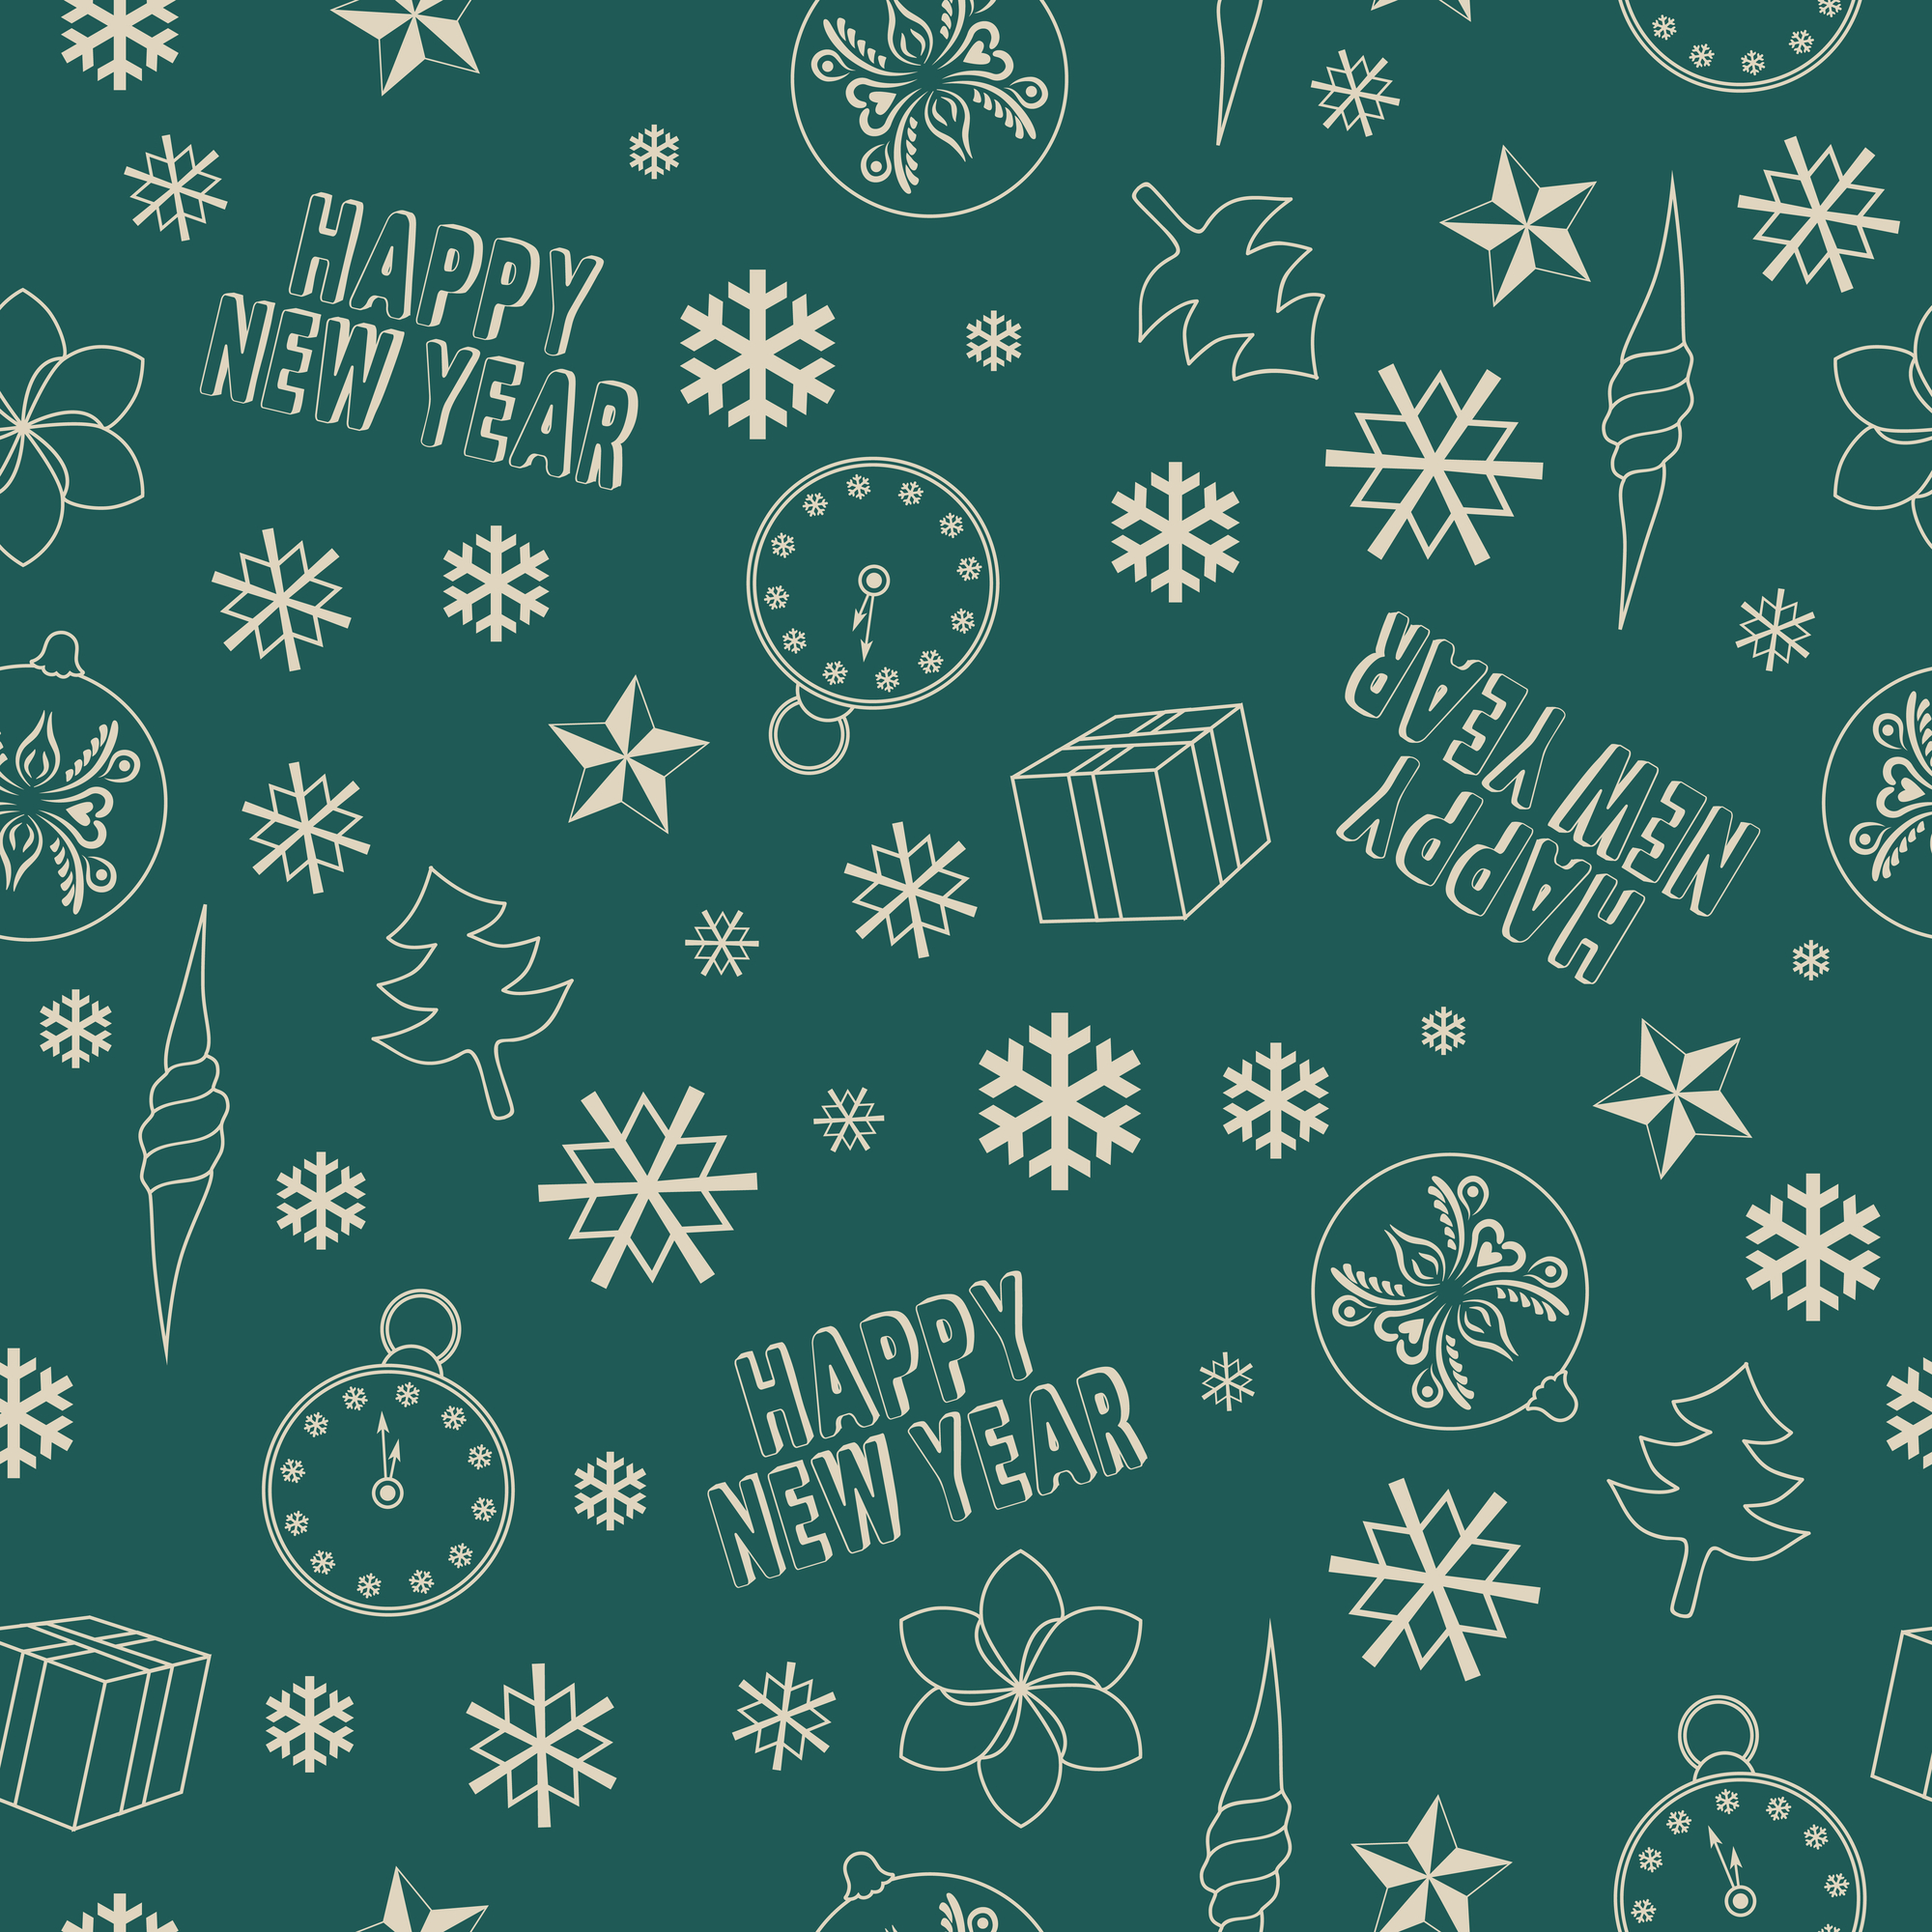 Christmas_greenwallpaper.jpg